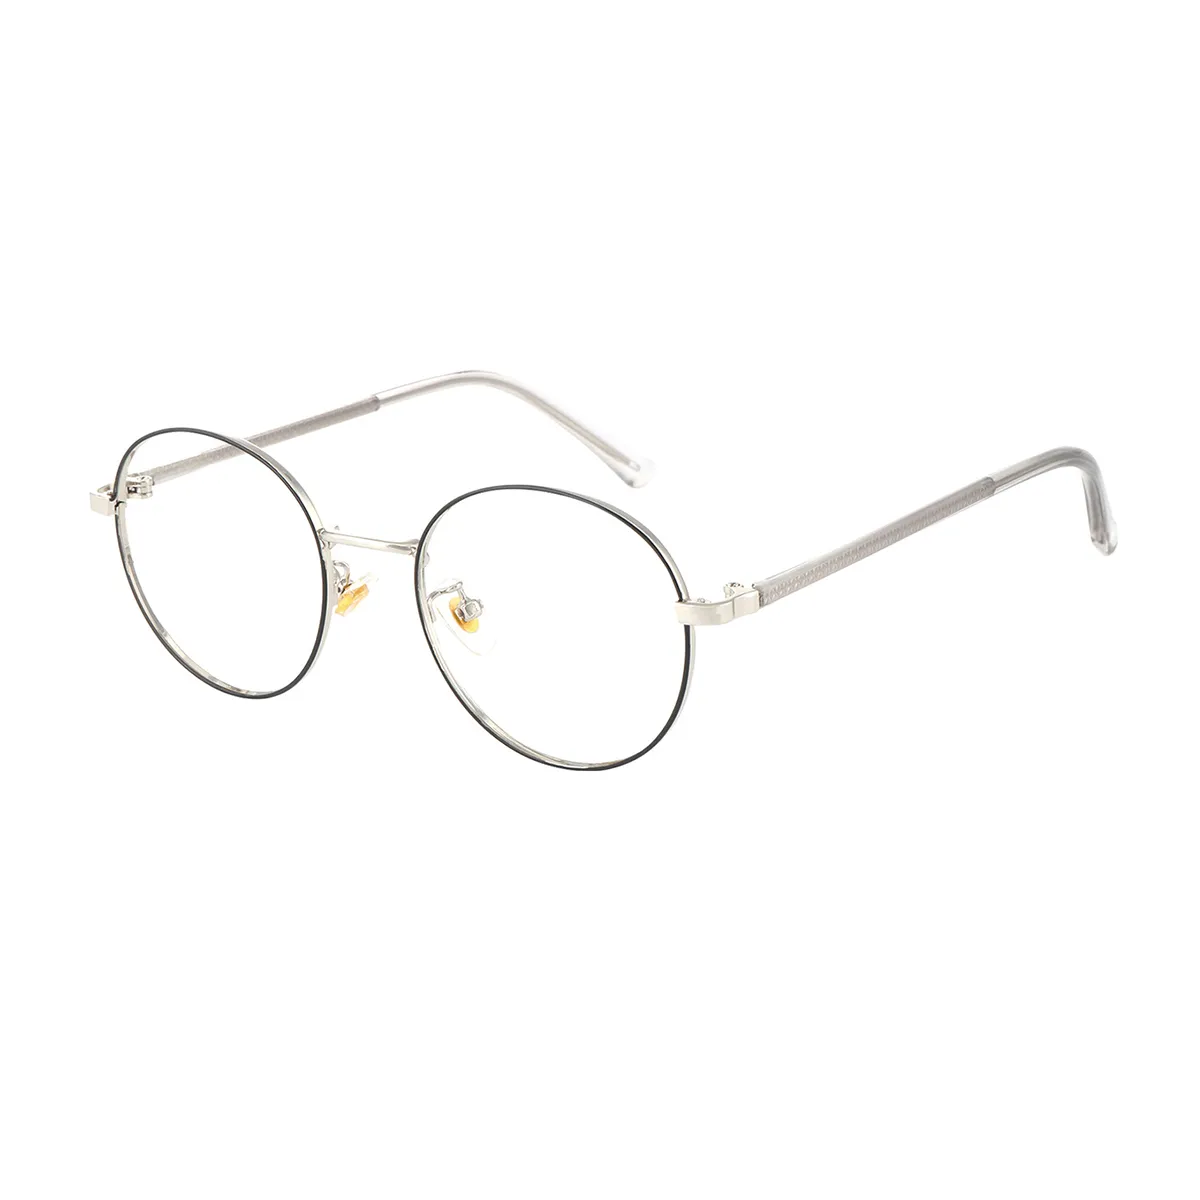 Fashion Round Silver Eyeglasses for Women & Men